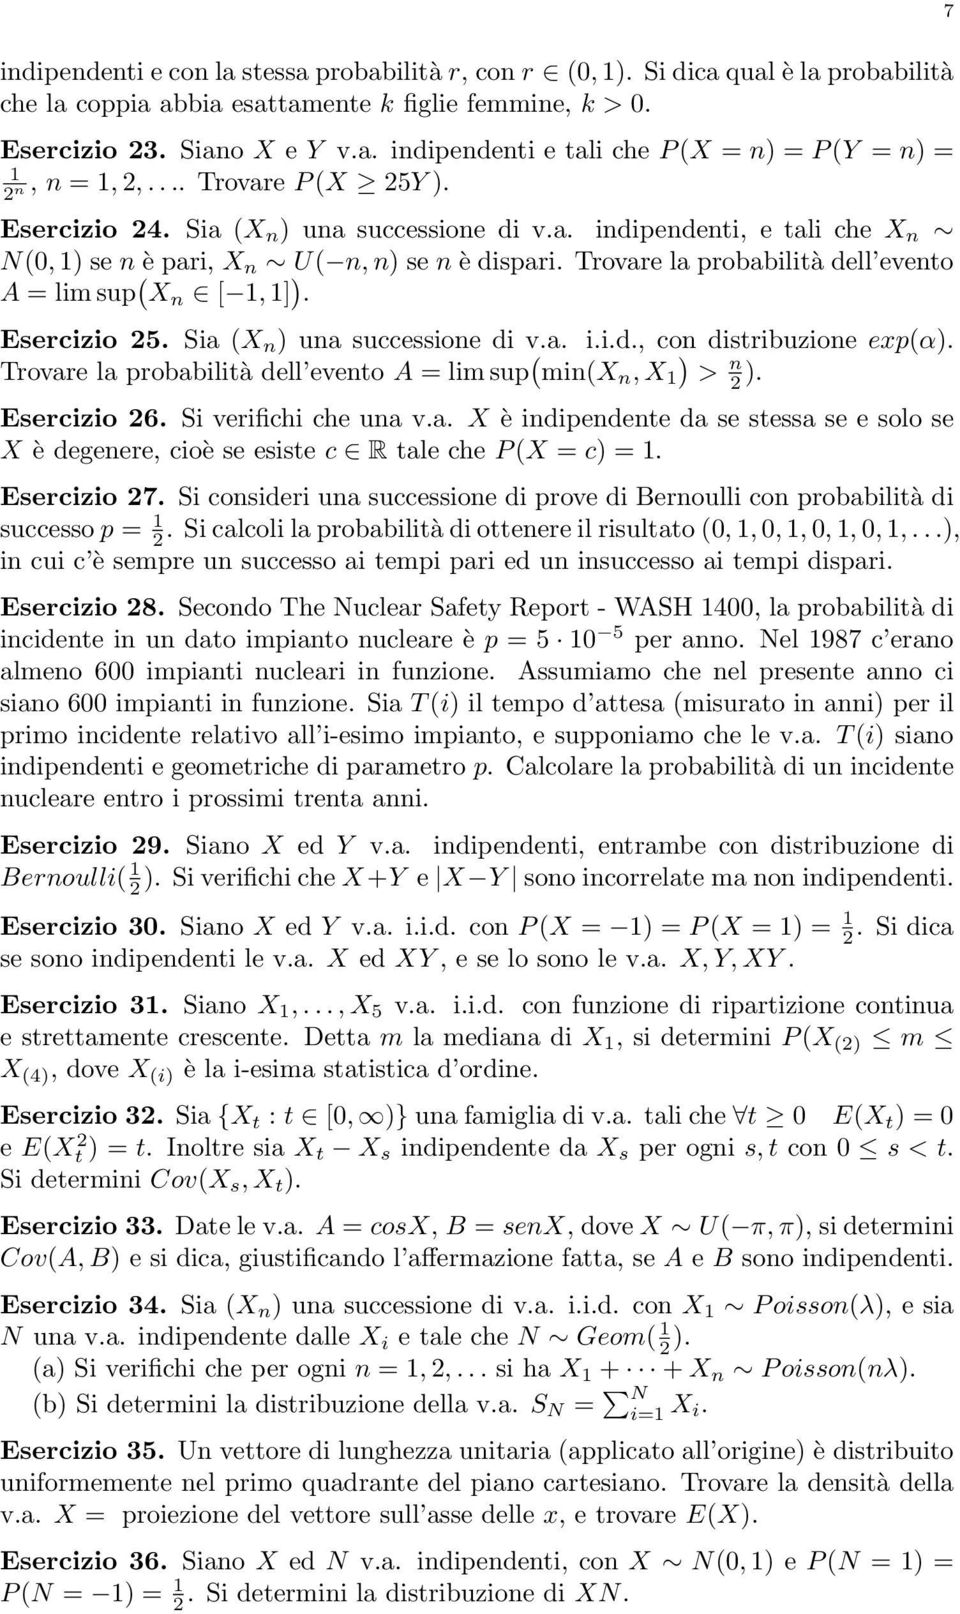 Esercizio 25 Sia (X ) ua successioe di va iid, co distribuzioe exp(α) Trovare la probabilità dell eveto A = lim sup ( mi(x, X ) > 2 ) Esercizio 26 Si verifichi che ua va X è idipedete da se stessa se